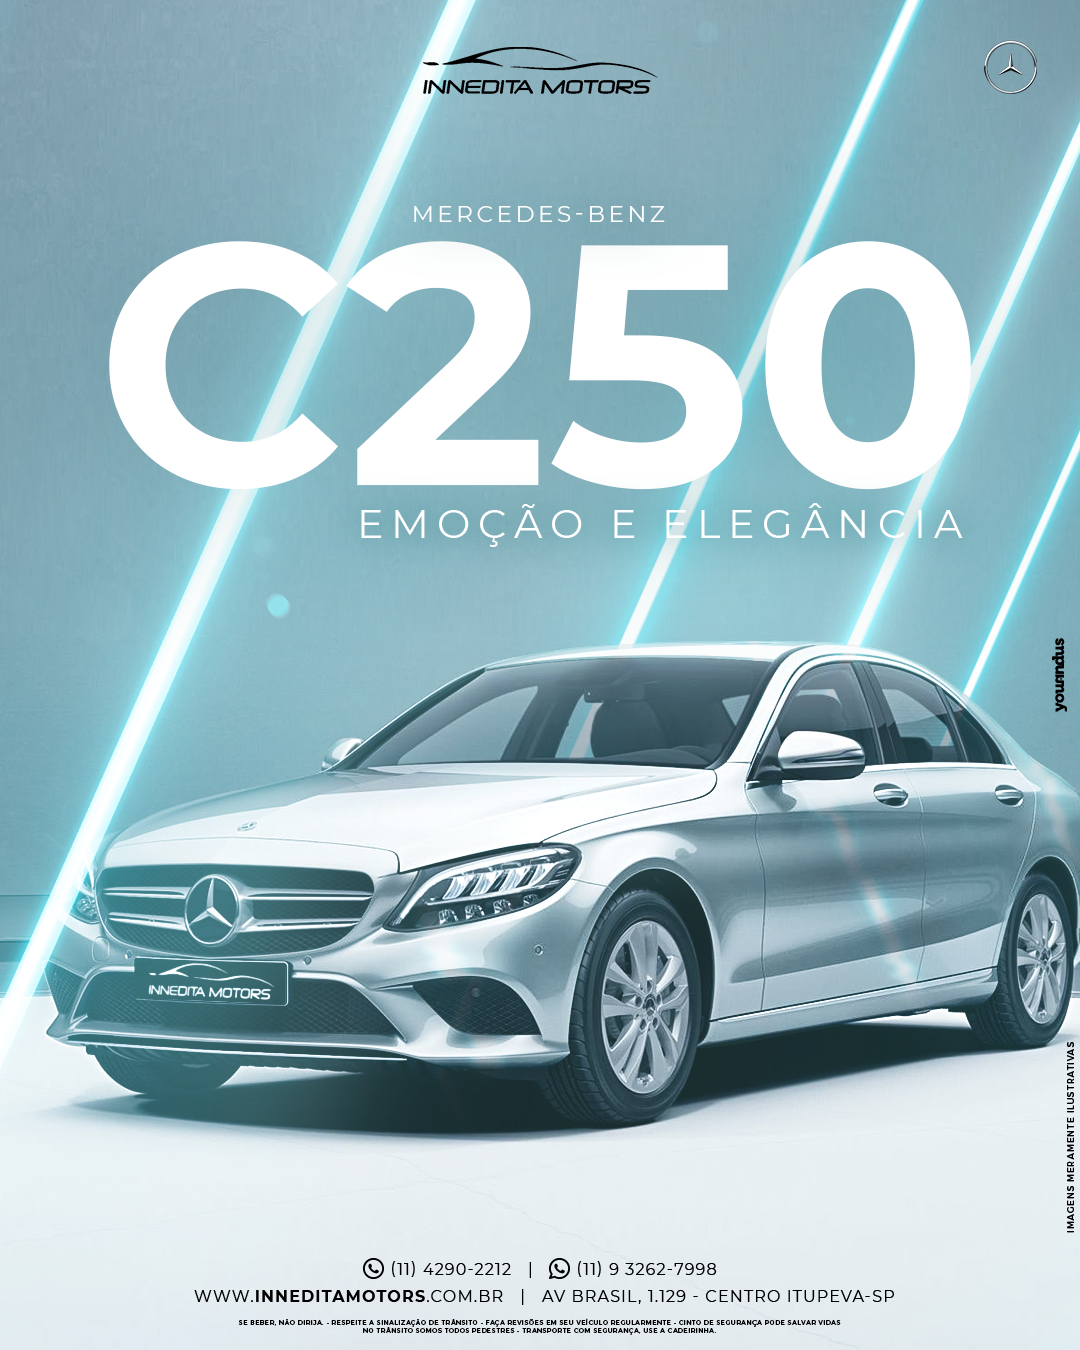 Mercedes-Benz C 250: Emoção e Elegância